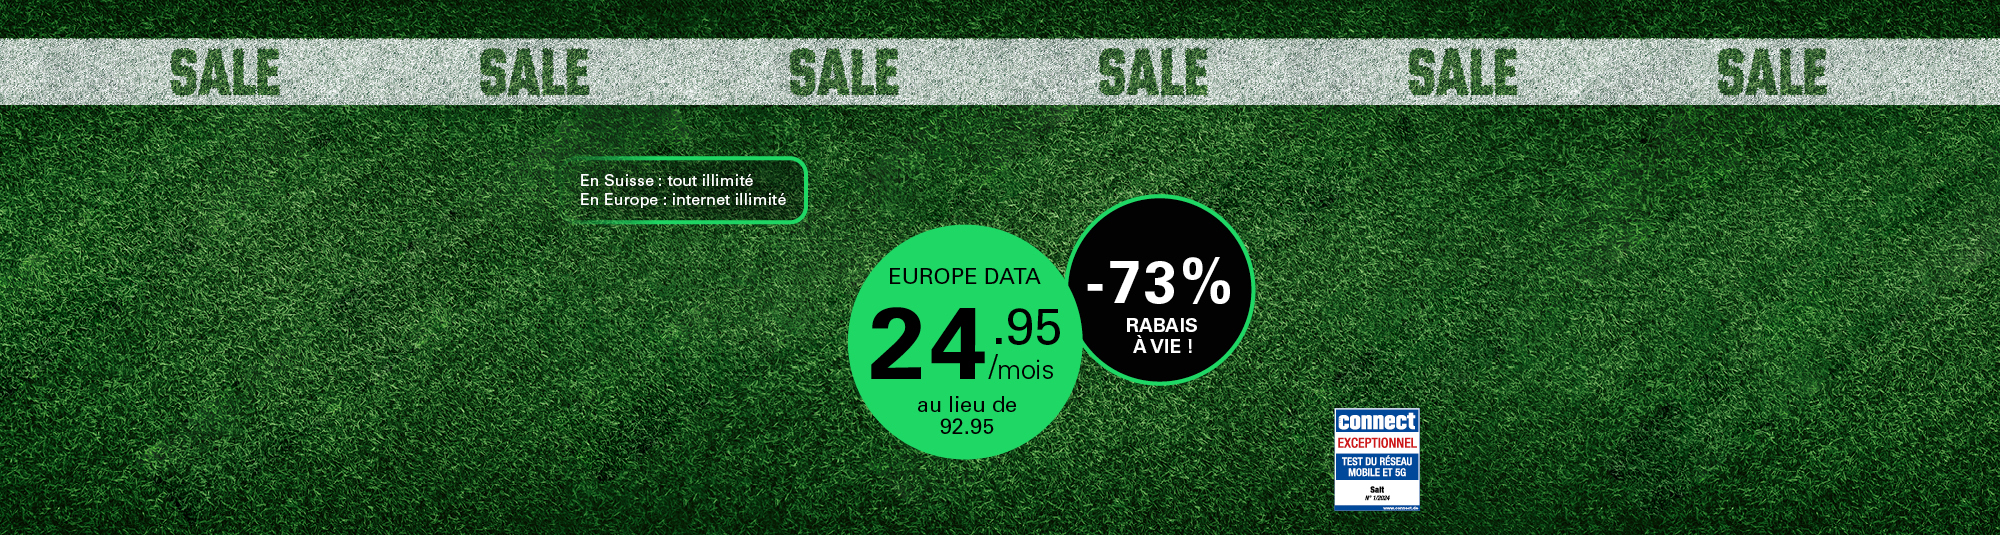 Abonnement Europe Data de Salt Mobile: 24,95/mois au lieu de 92,95